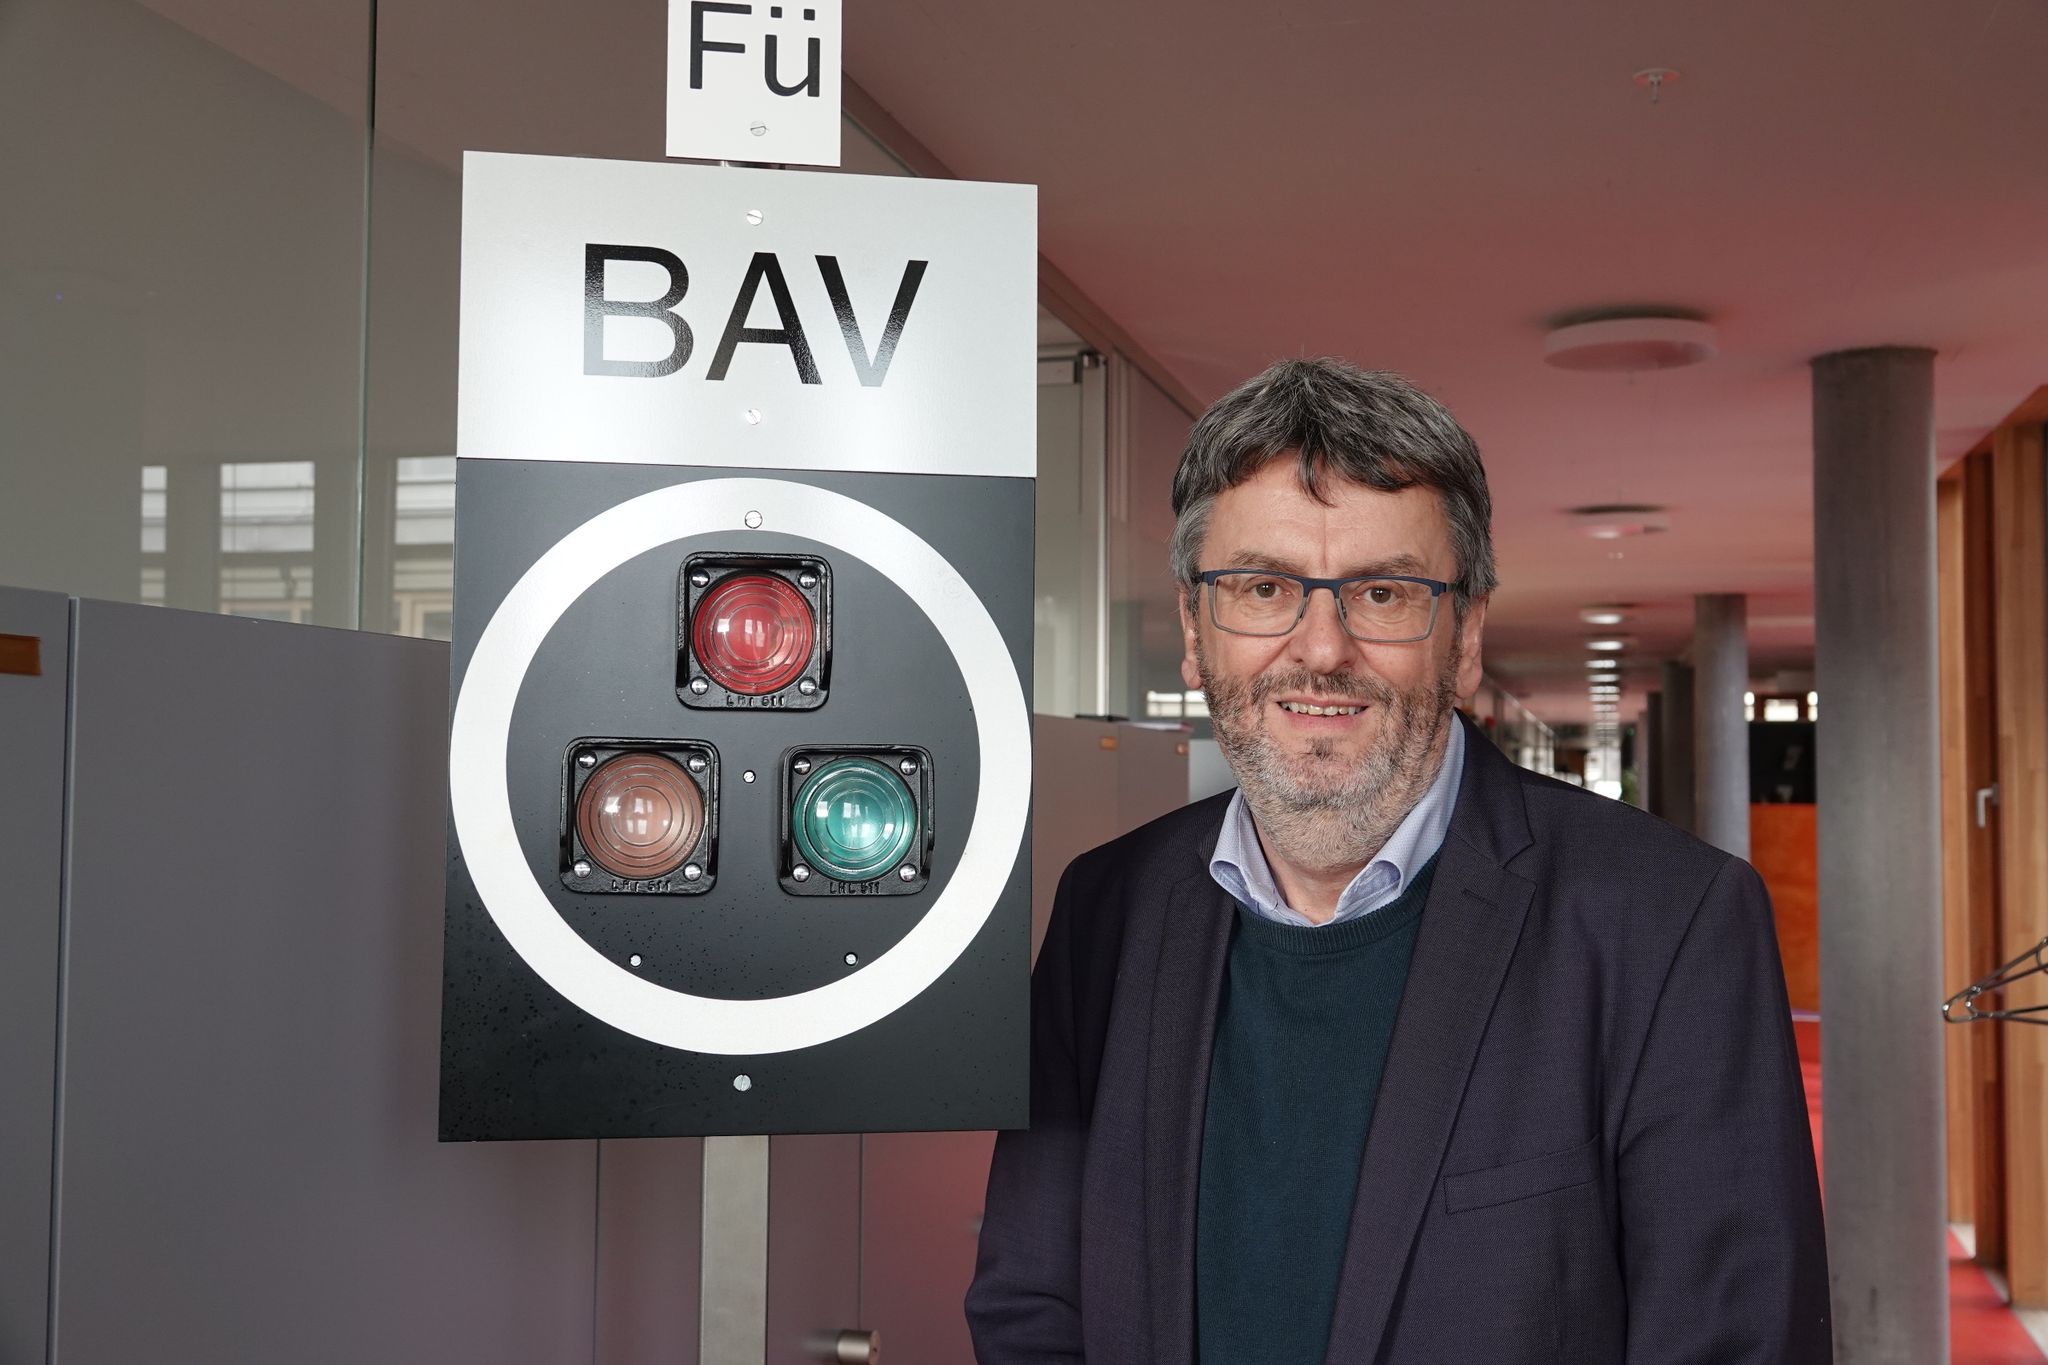 «Eine Bahn muss einfach 85 bis 90 Prozent pünktlich sein», sagt Peter Füglistaler, Direktor des schweizerischen Bundesamtes für Verkehr.